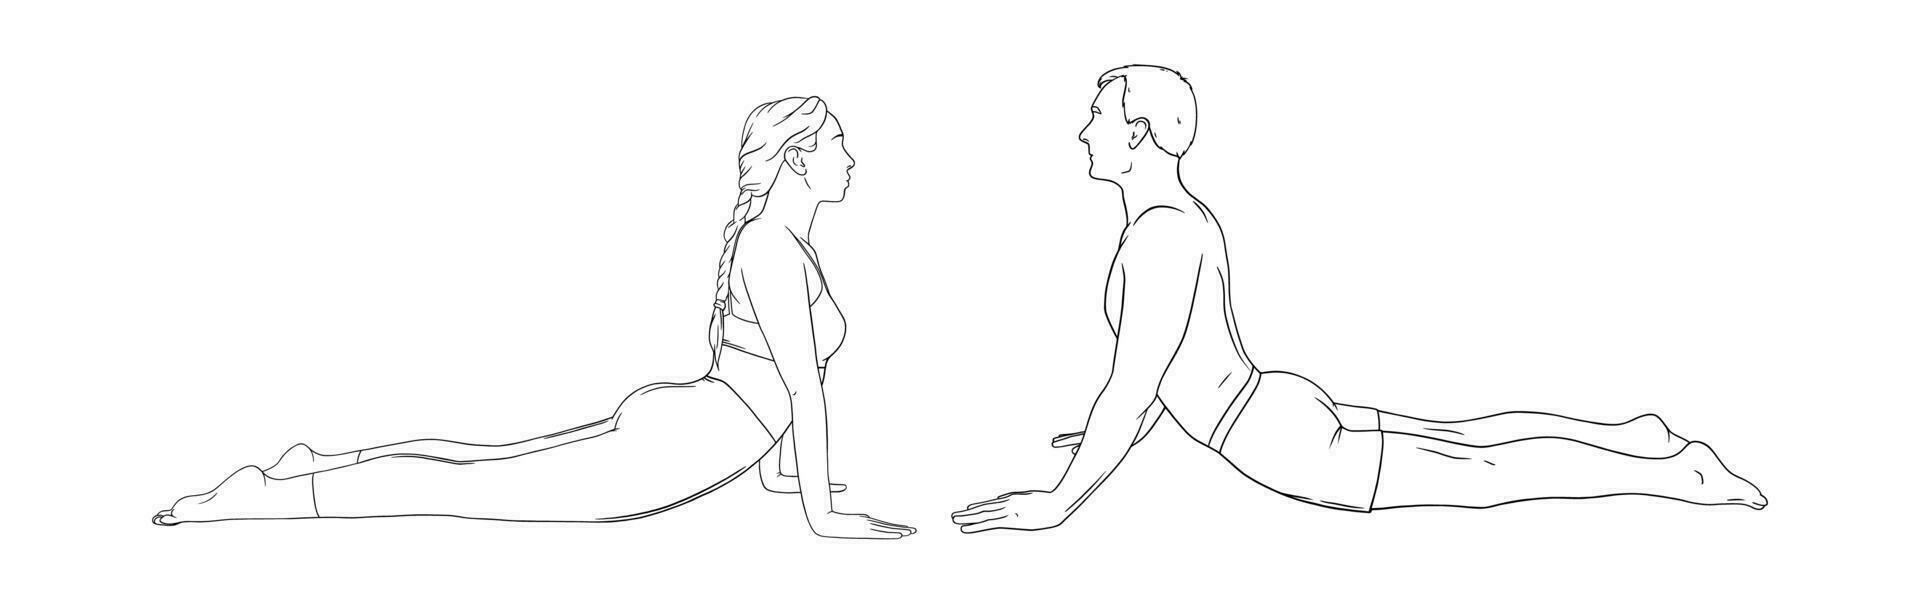 yoga kobra utgör eller bhujangasana. kvinna och man praktiserande stärka yoga utgör. hand dragen vektor illustration